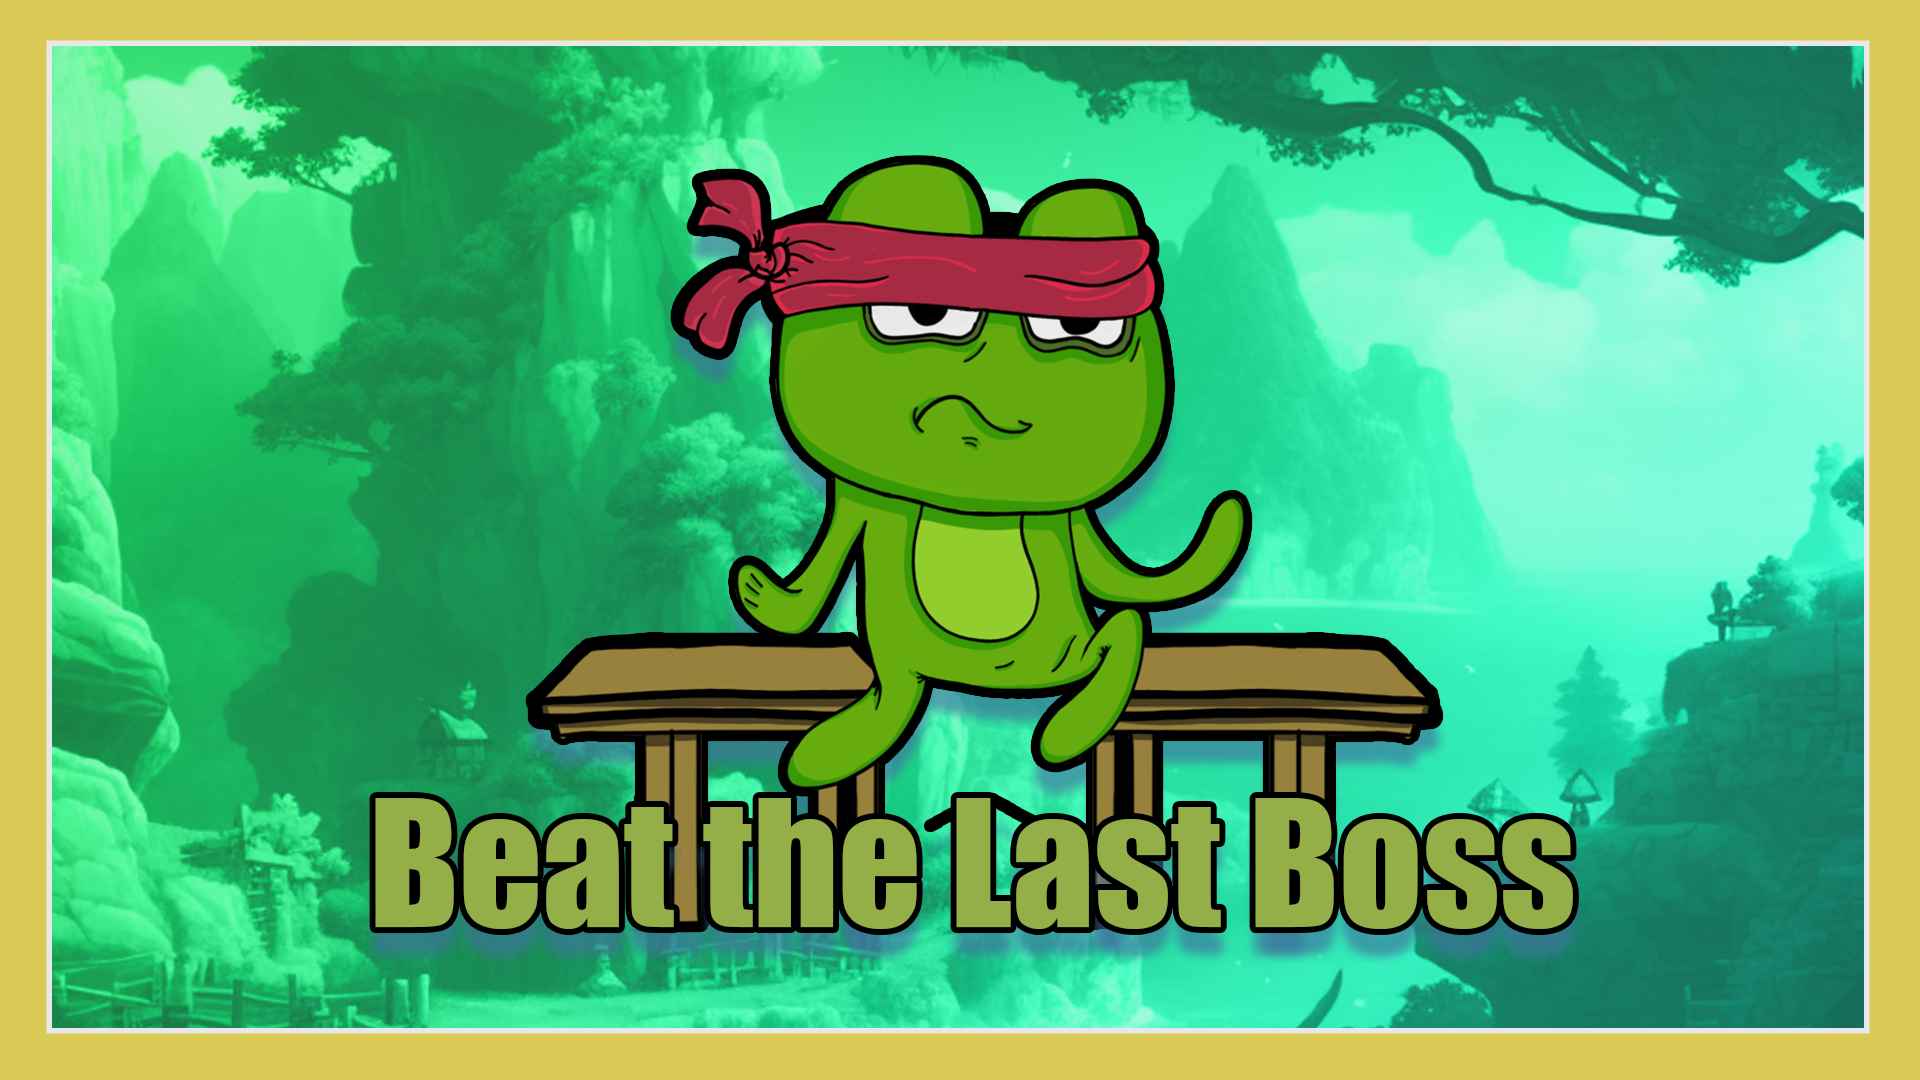 Beat the last Boss